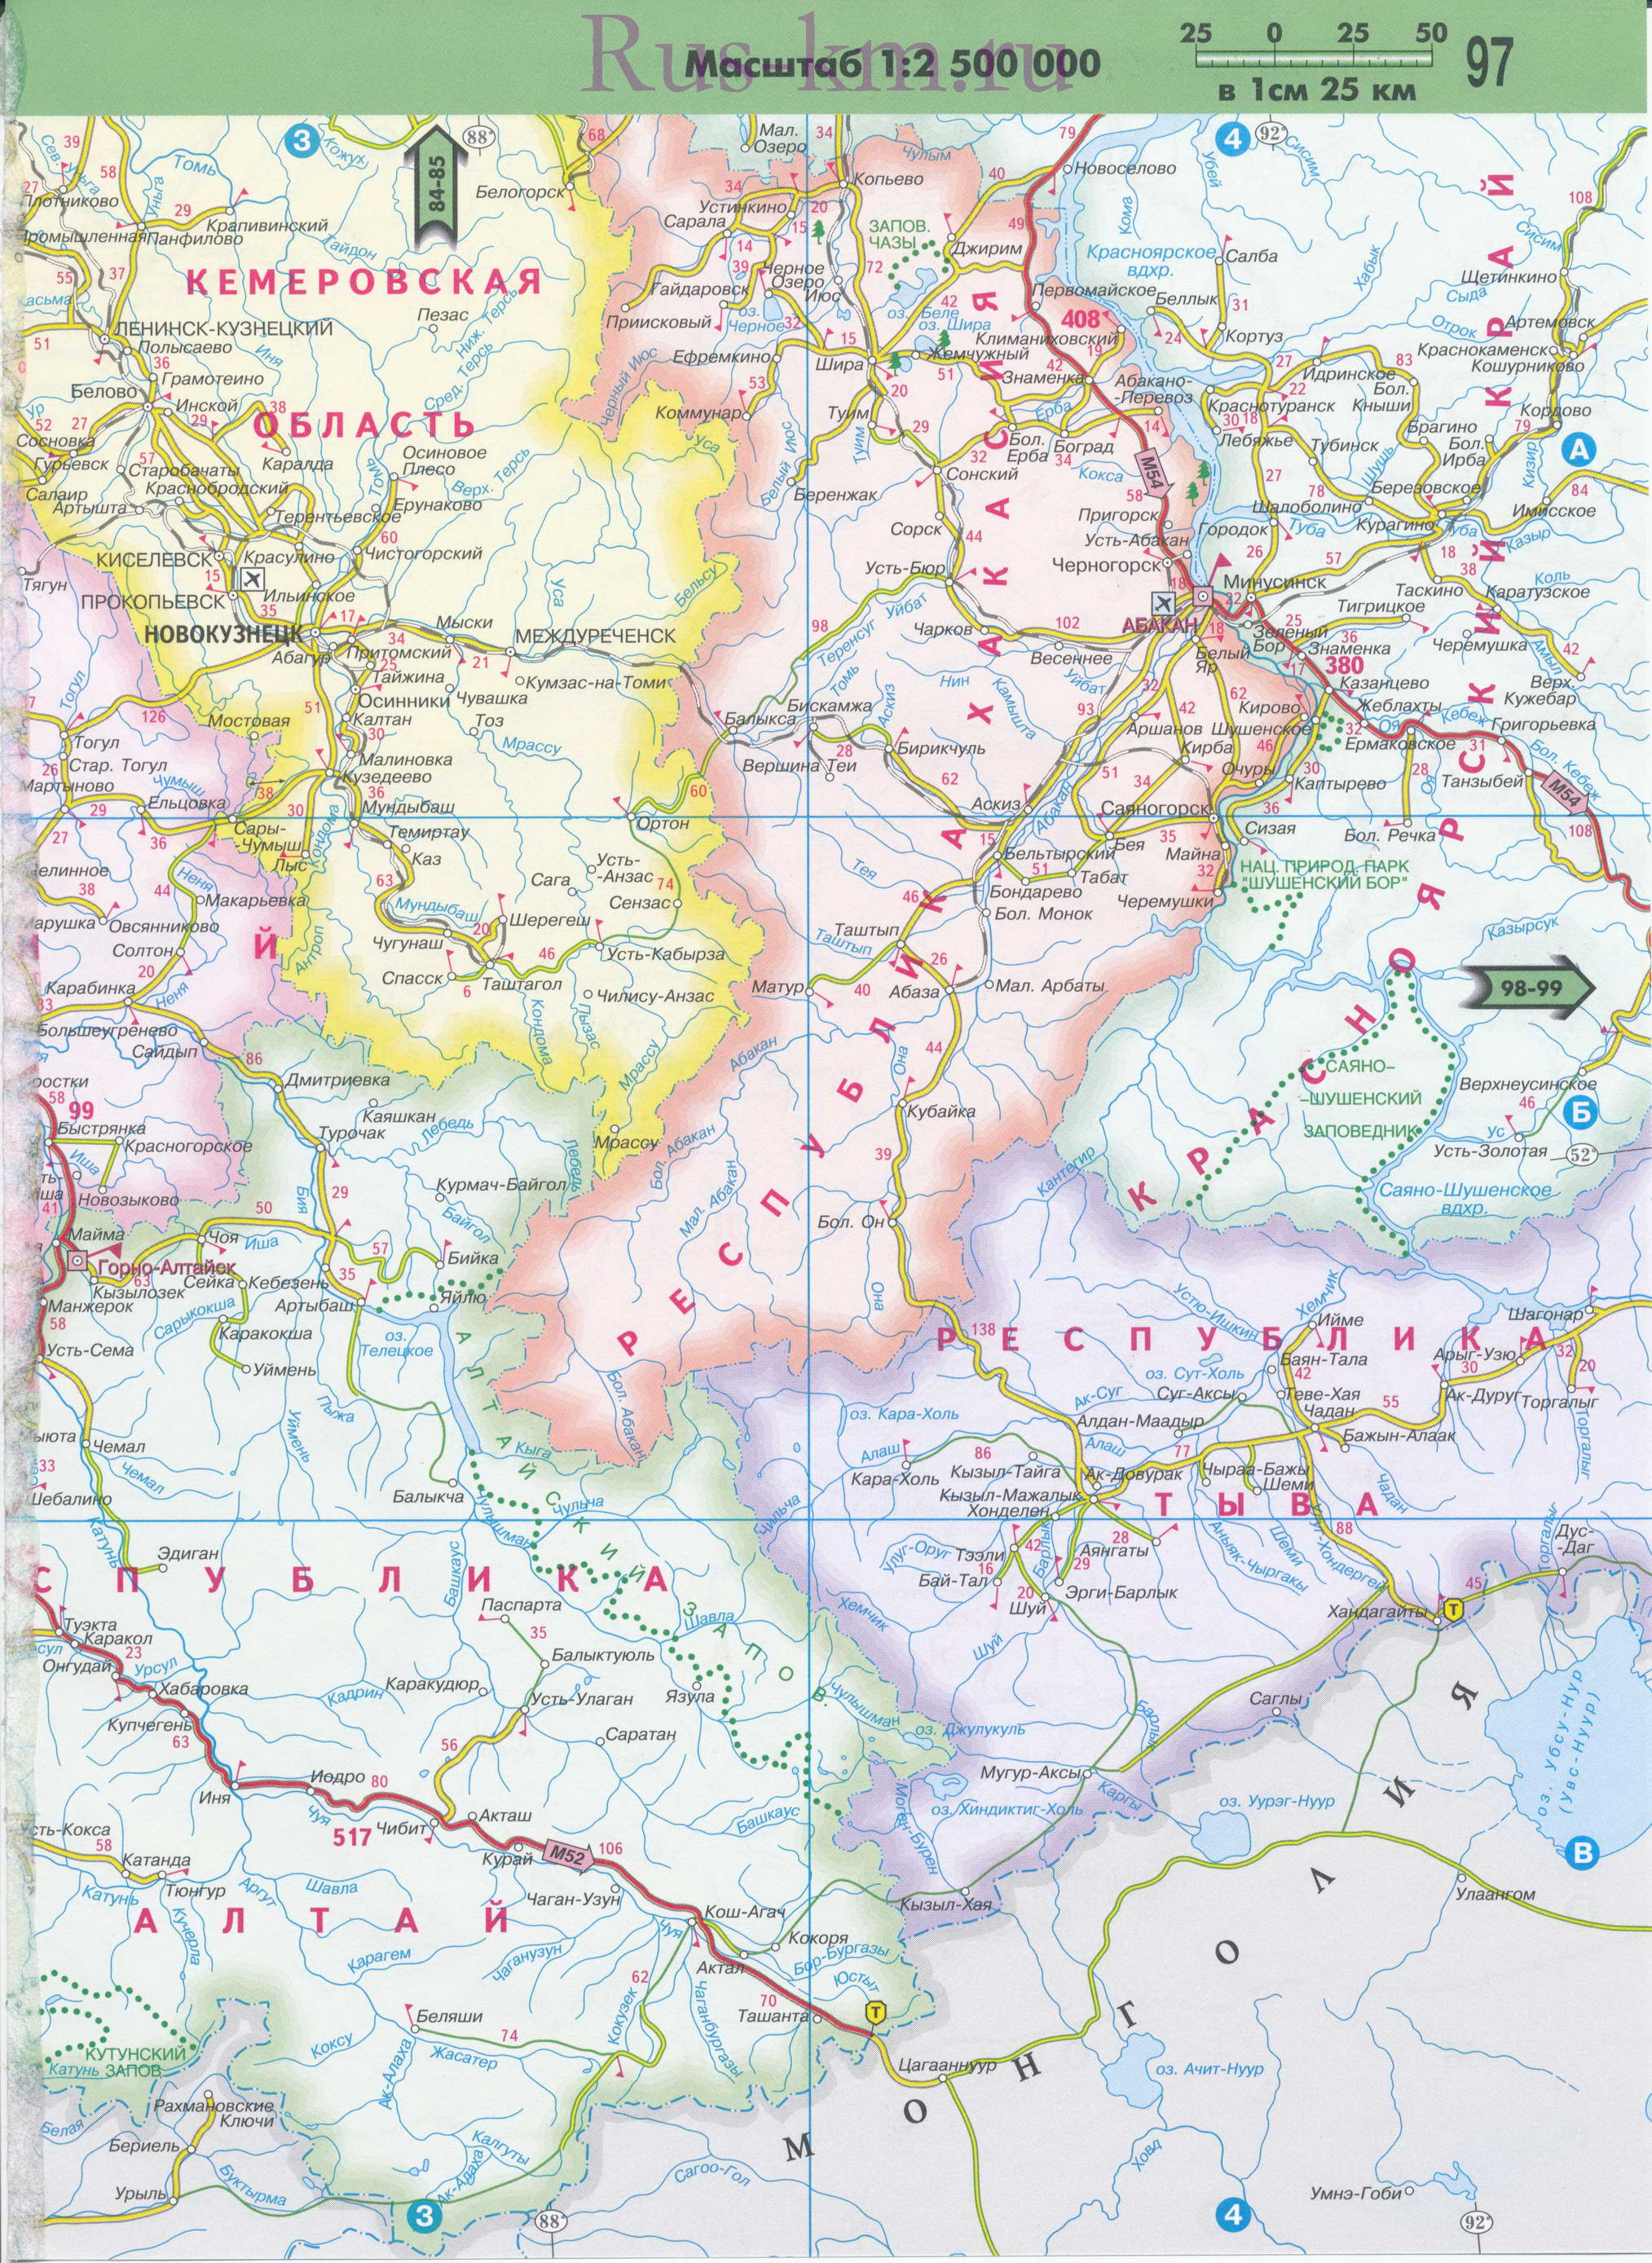 Карта Хакасии. Карта автомобильных дорог республики Хакасия масштаба 1см:25км, A0 - 